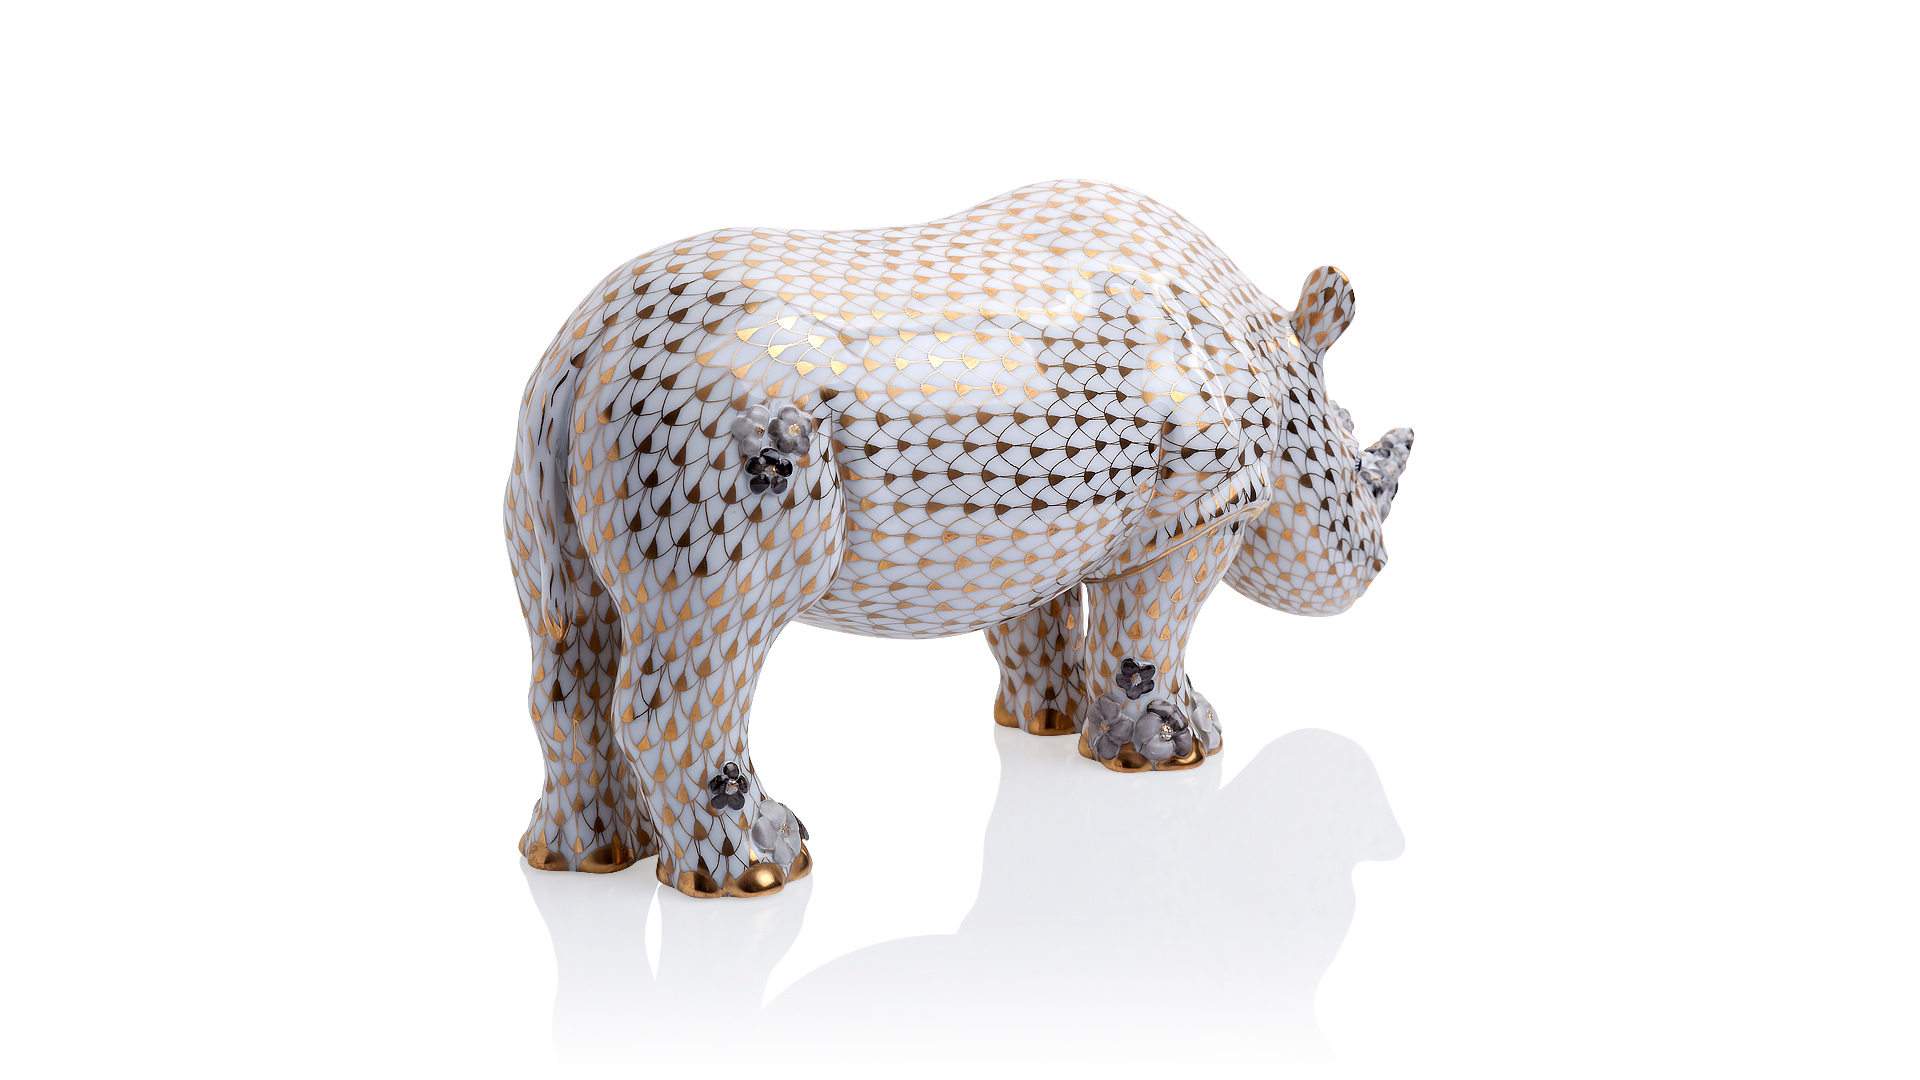 Фигурка Herend 16,5 см Носорог с цветочным орнаментом, лим.вып. 50шт